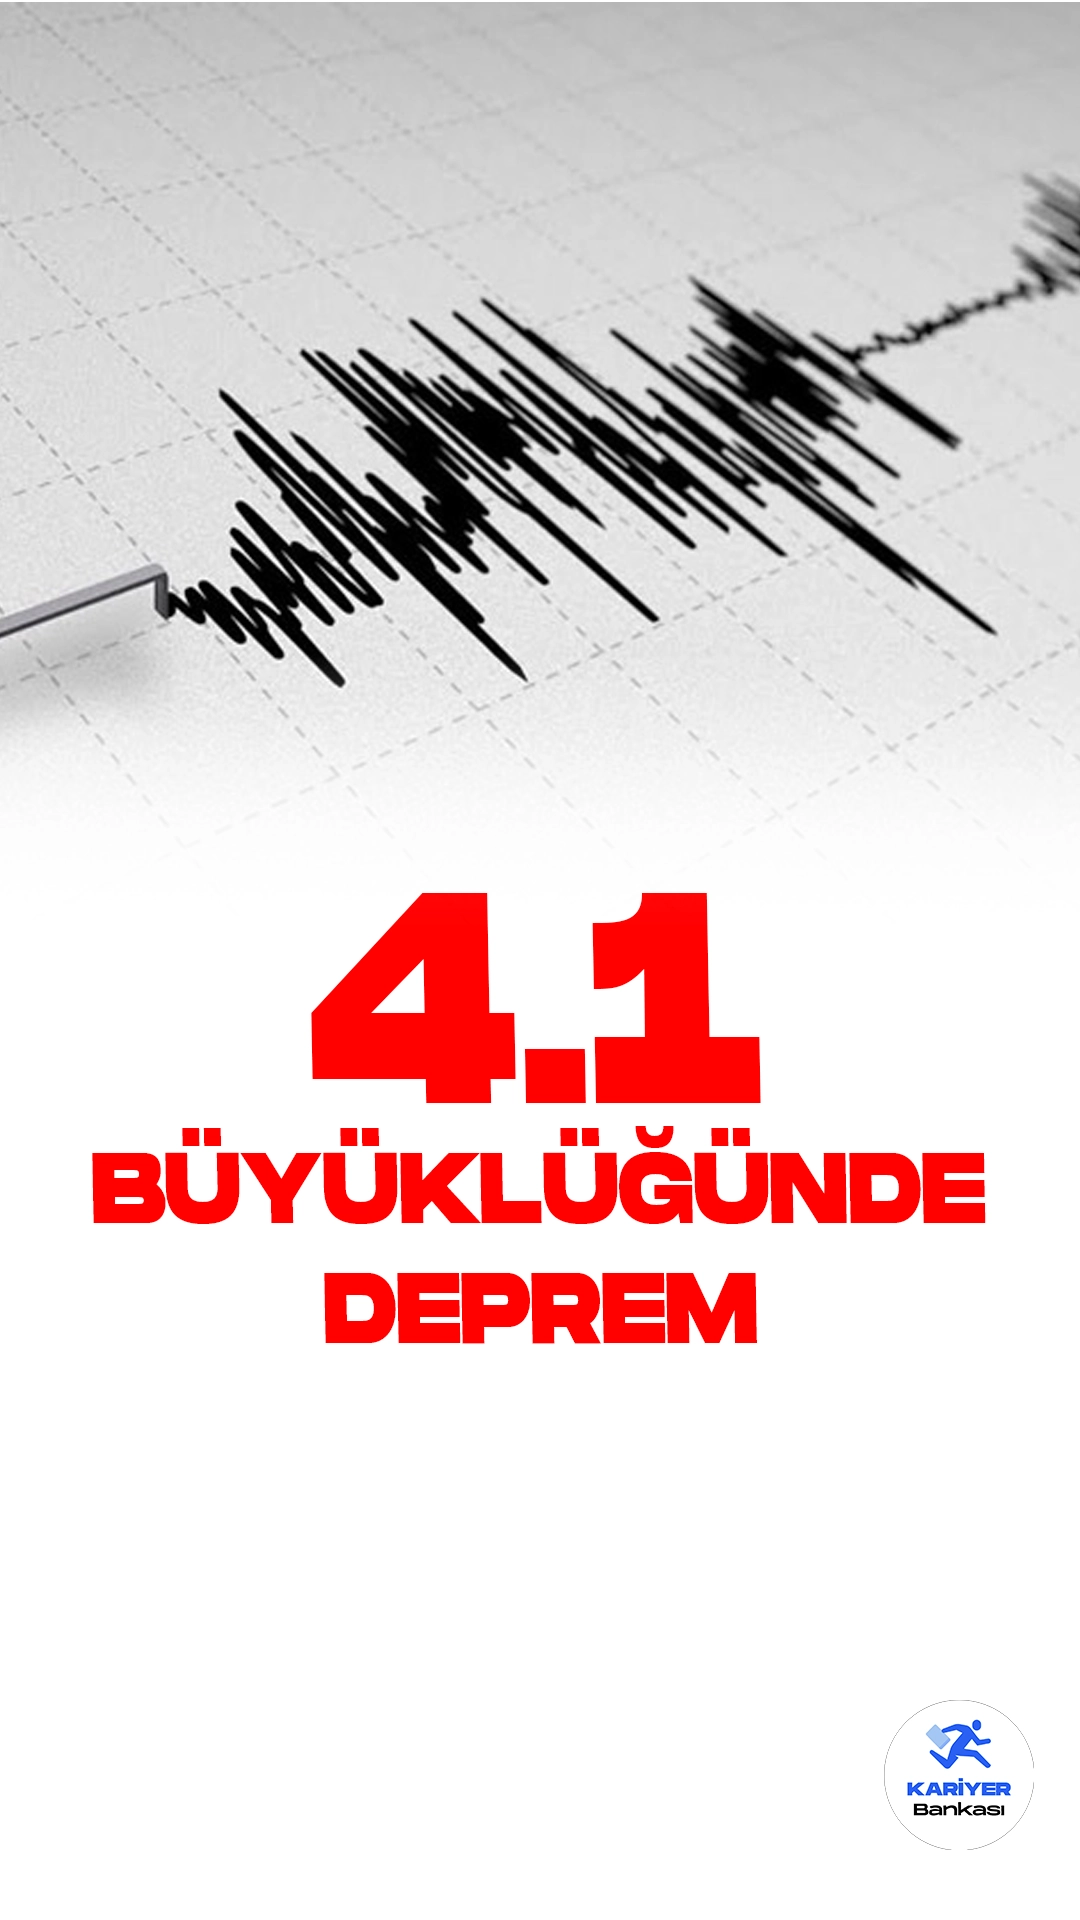 Muğla'da 4.1 Büyüklüğünde Deprem Oldu. İçişleri Bakanlığı Afet ve Acil Durum Yönetimi Başkanlığı (AFAD) resmi sayfasından yayımlanan son dakika bilgisine göre, Muğla'da 4.1 büyüklüğünde deprem meydana geldiği aktarıldı.